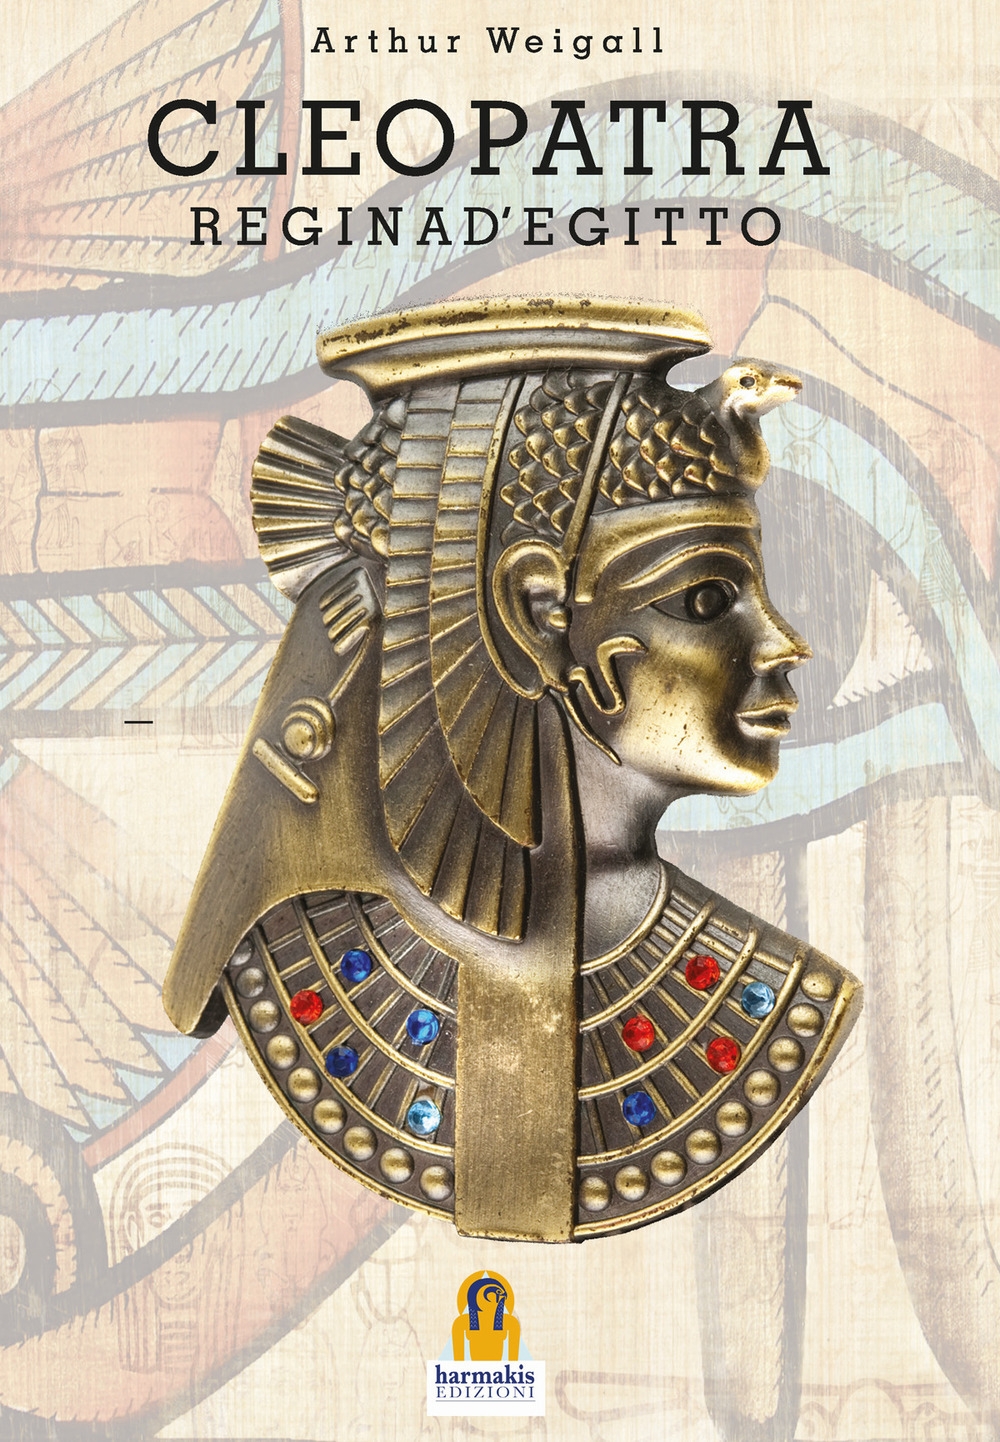 Libri Arthur Weigall - Cleopatra. Regina D'egitto NUOVO SIGILLATO, EDIZIONE DEL 19/09/2020 SUBITO DISPONIBILE